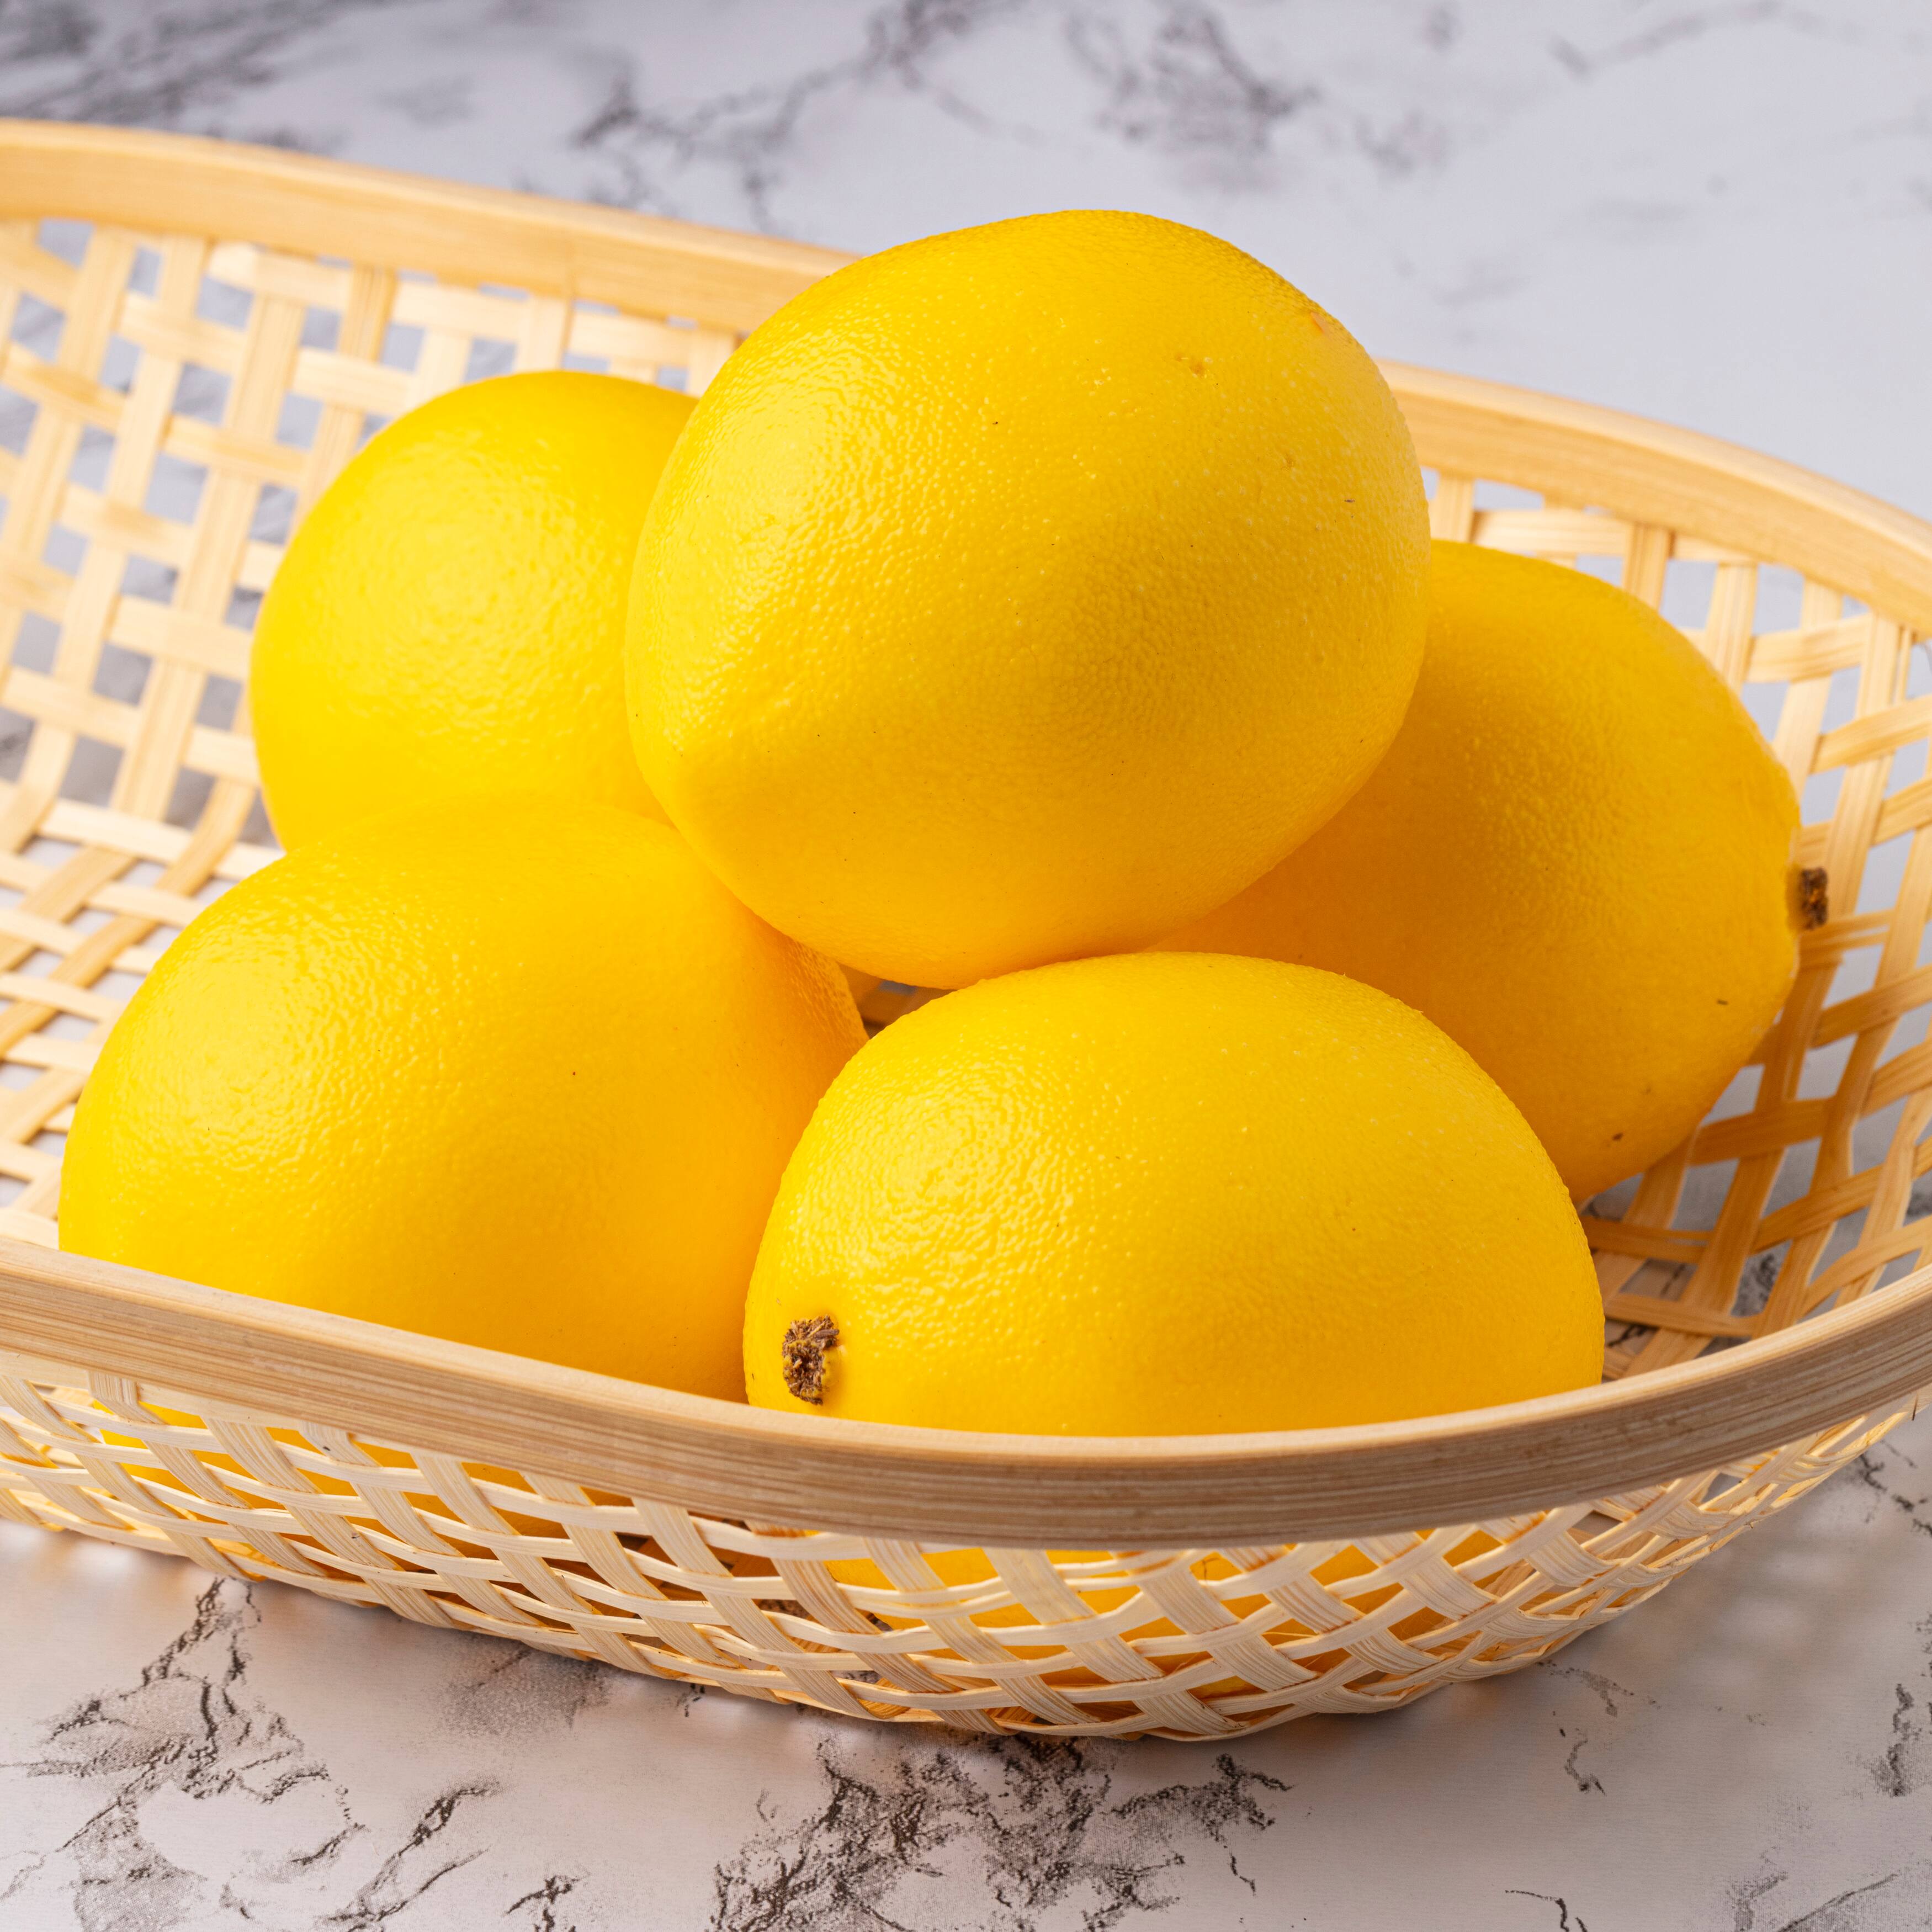 4 Large Artificial Lemons Fruit